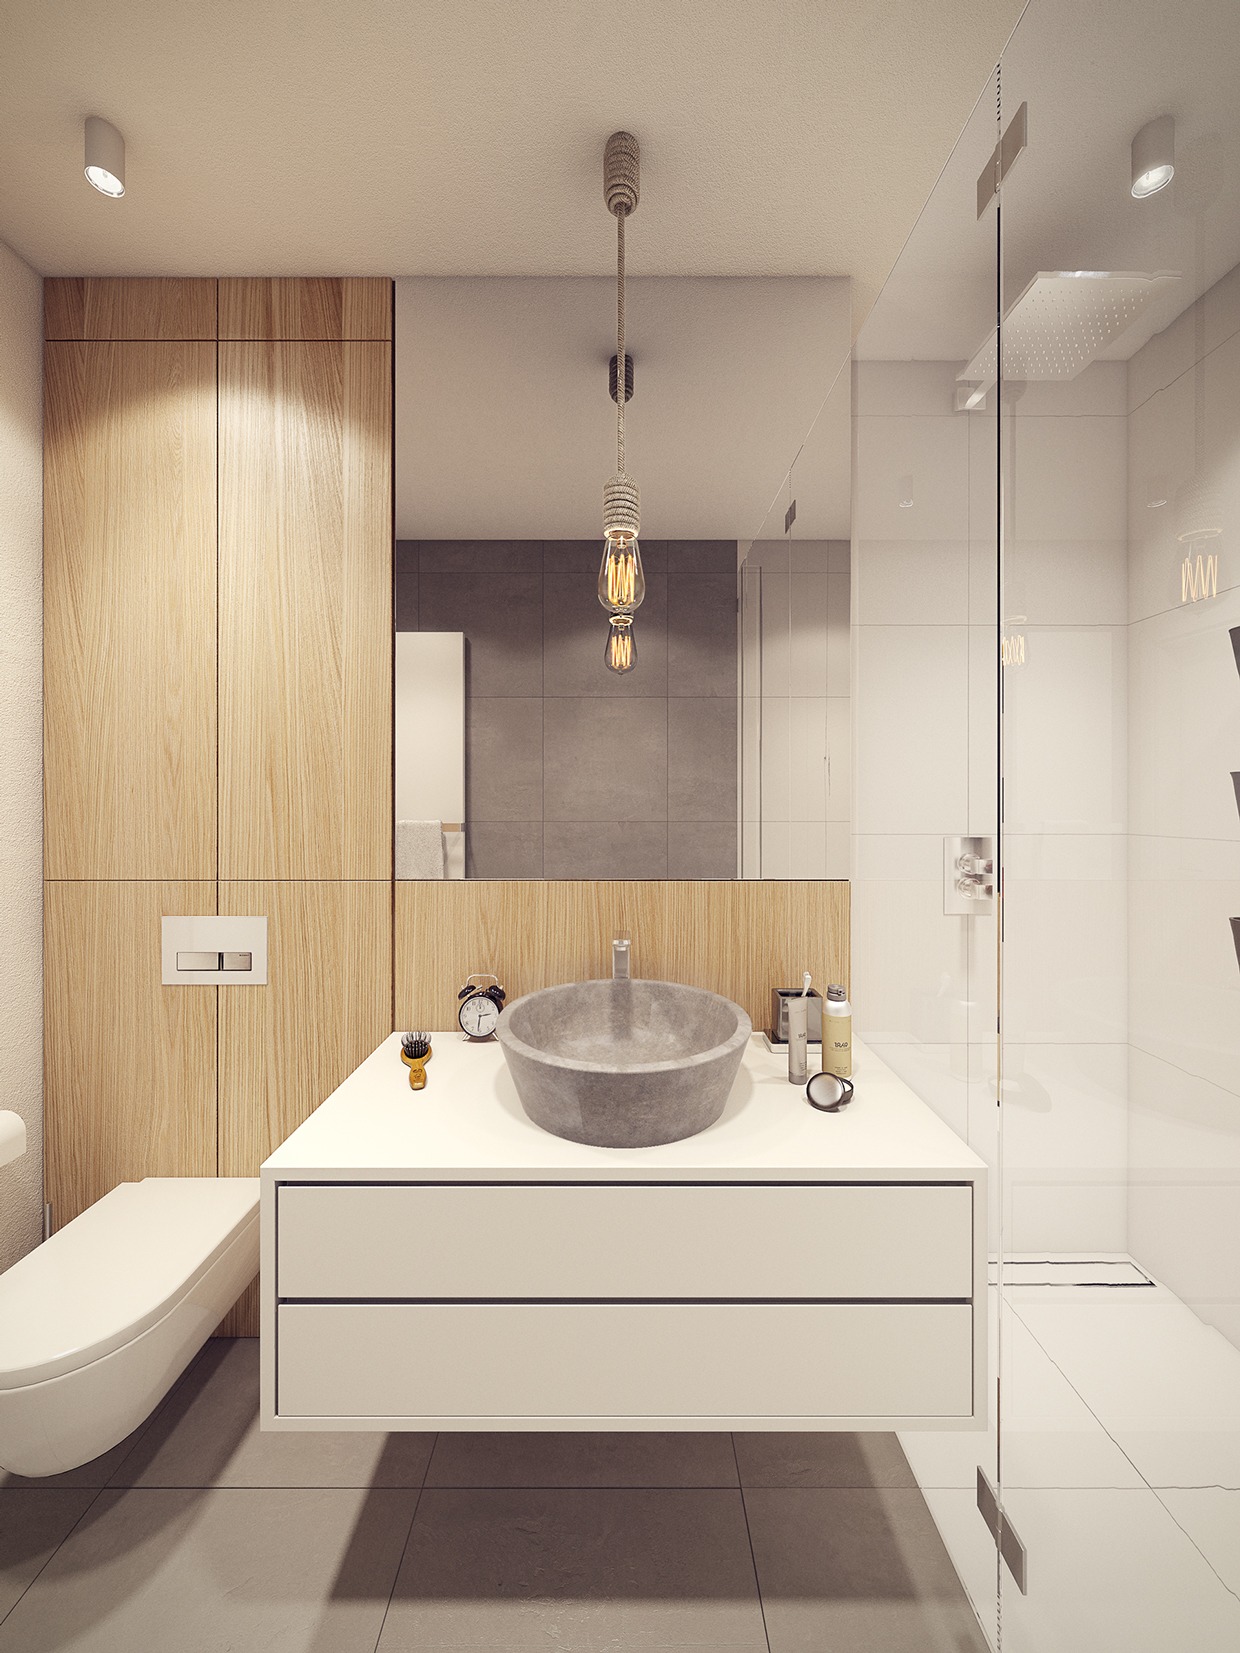 Wedo thiết kế nội thất nhà tắm đẹp lấy cảm hứng từ xu hướng thiết kế những năm 60